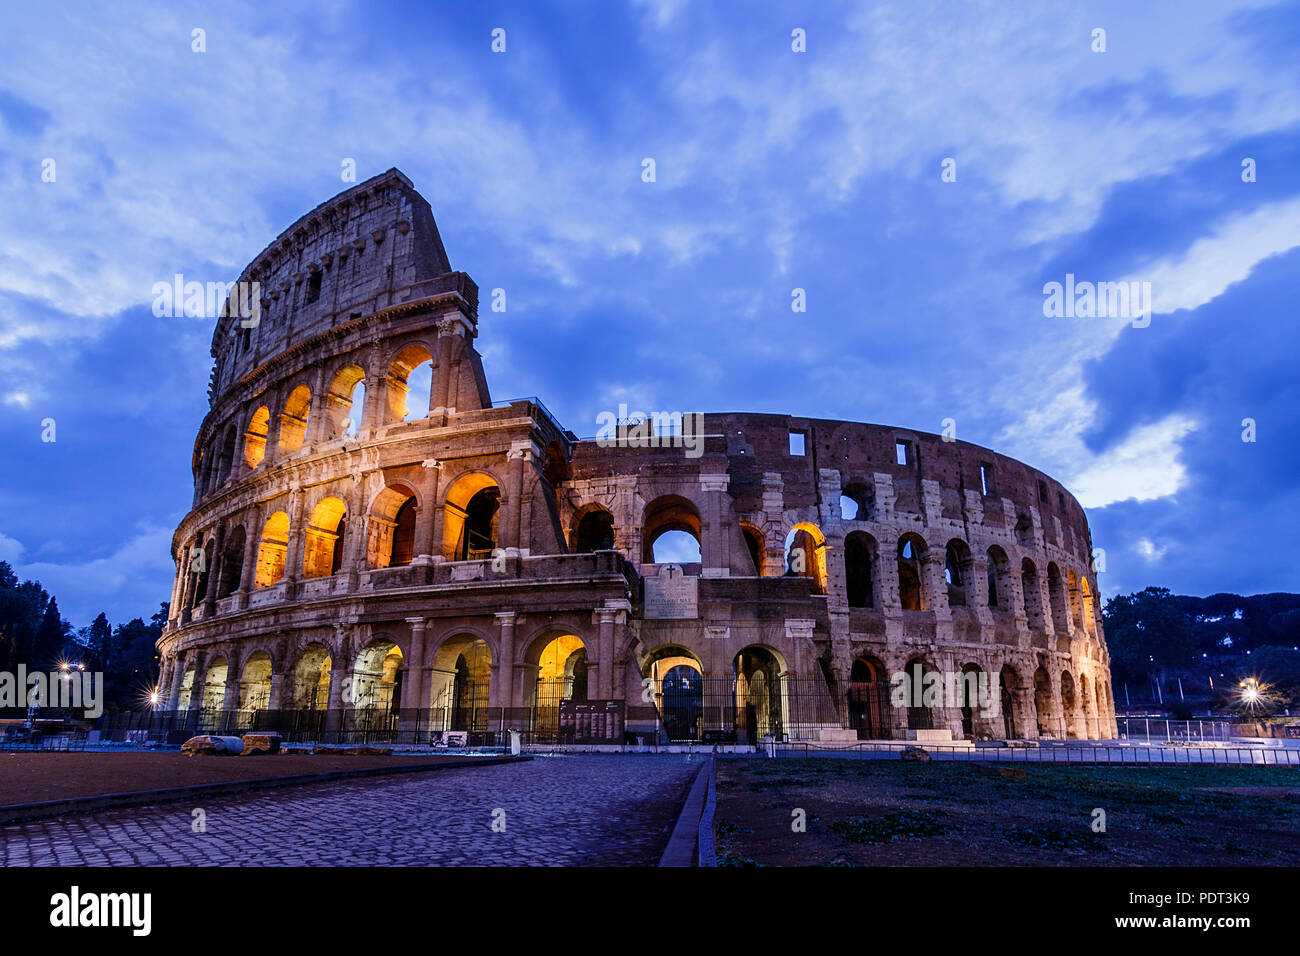 Vue à l'heure bleue de l'ancien forum Romain, Colisée, Site du patrimoine mondial de l'UNESCO, Rome, Italie. Banque D'Images